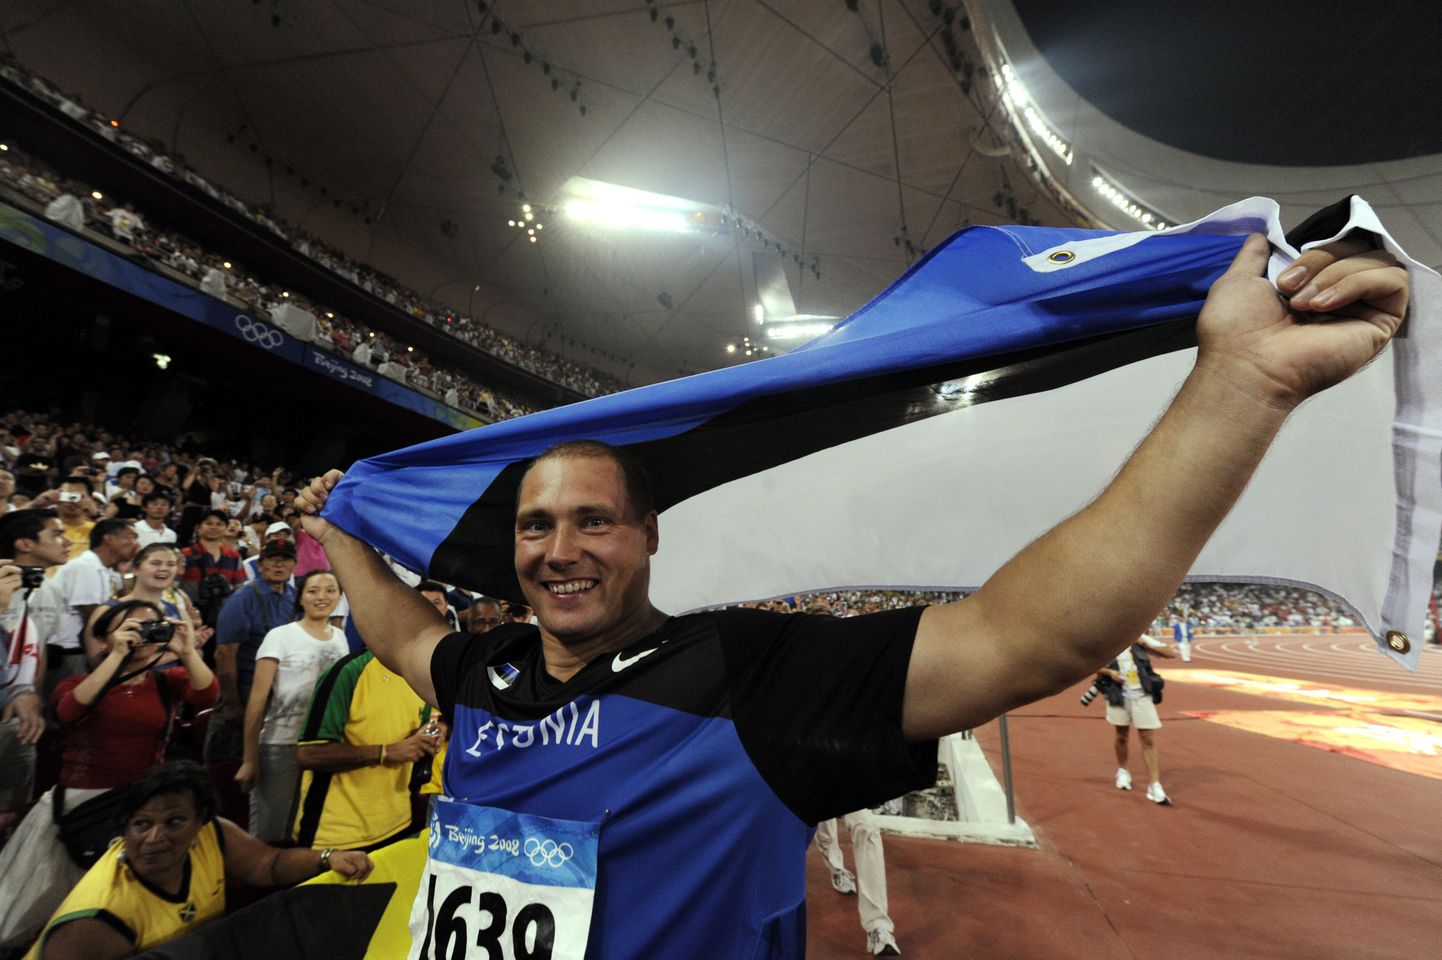 Eesti viimane olümpiakuld on Gerd Kanter.